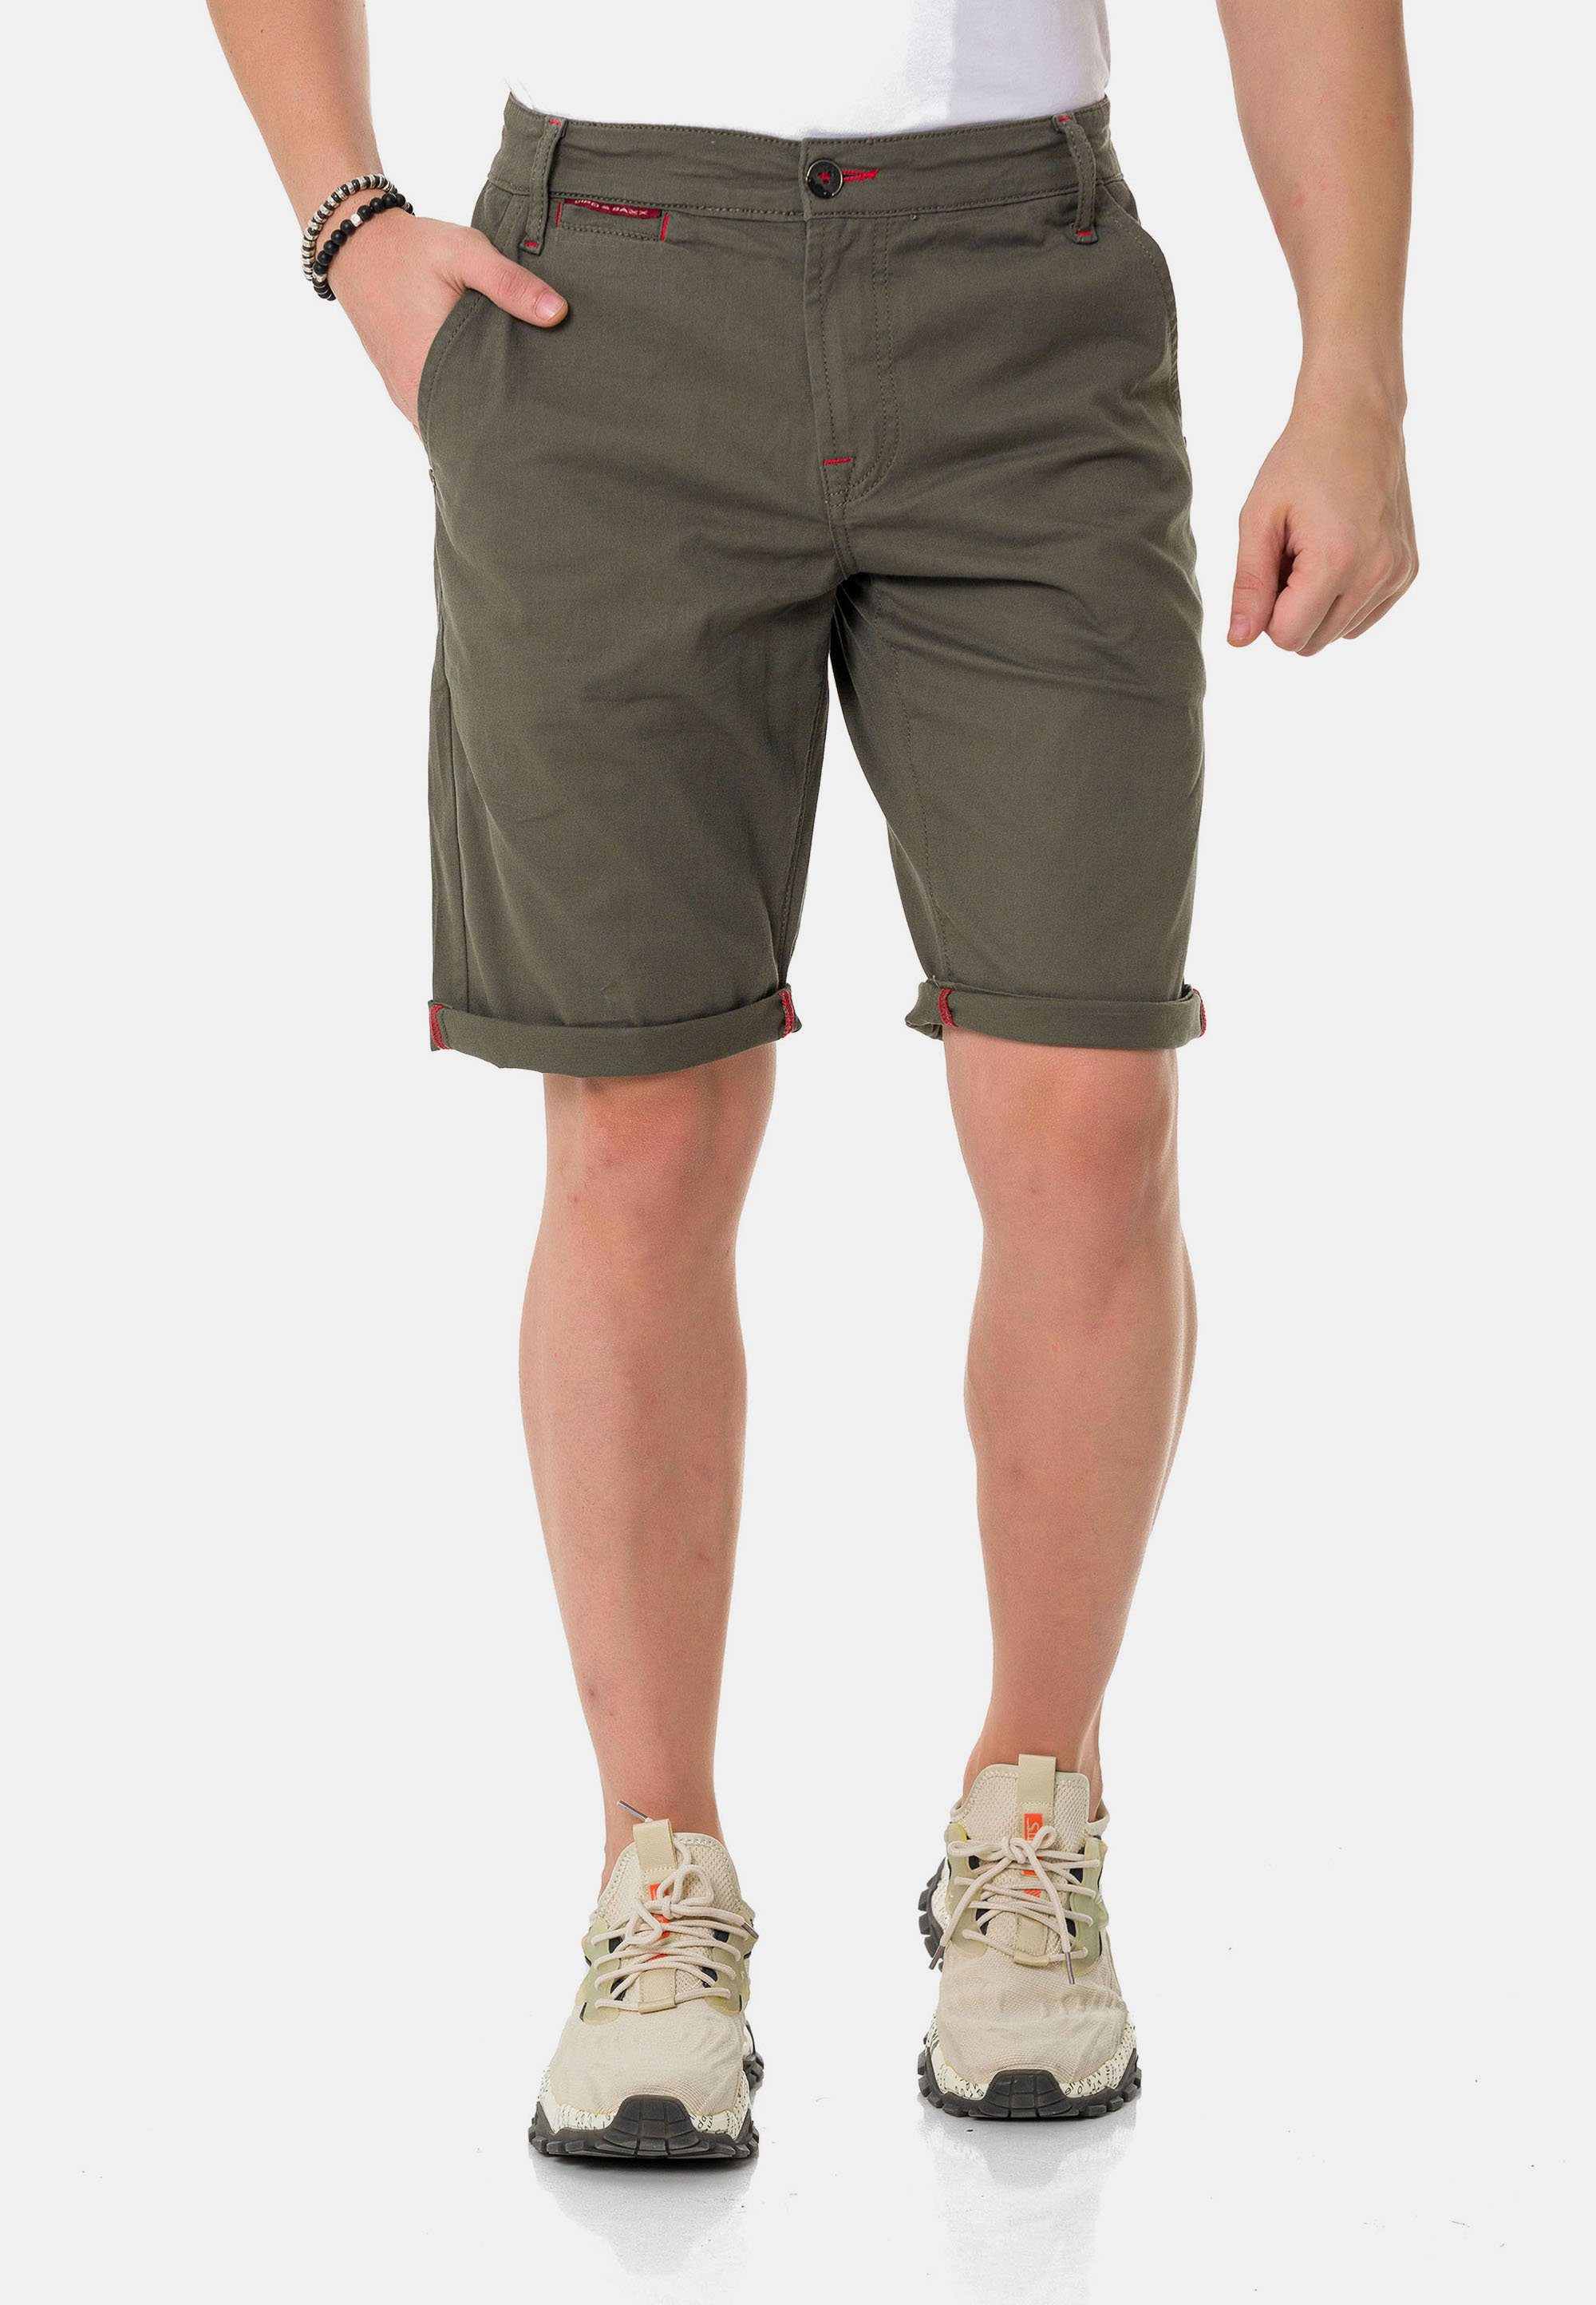 Cipo & Baxx Shorts im einfarbigen Look khaki | Shorts